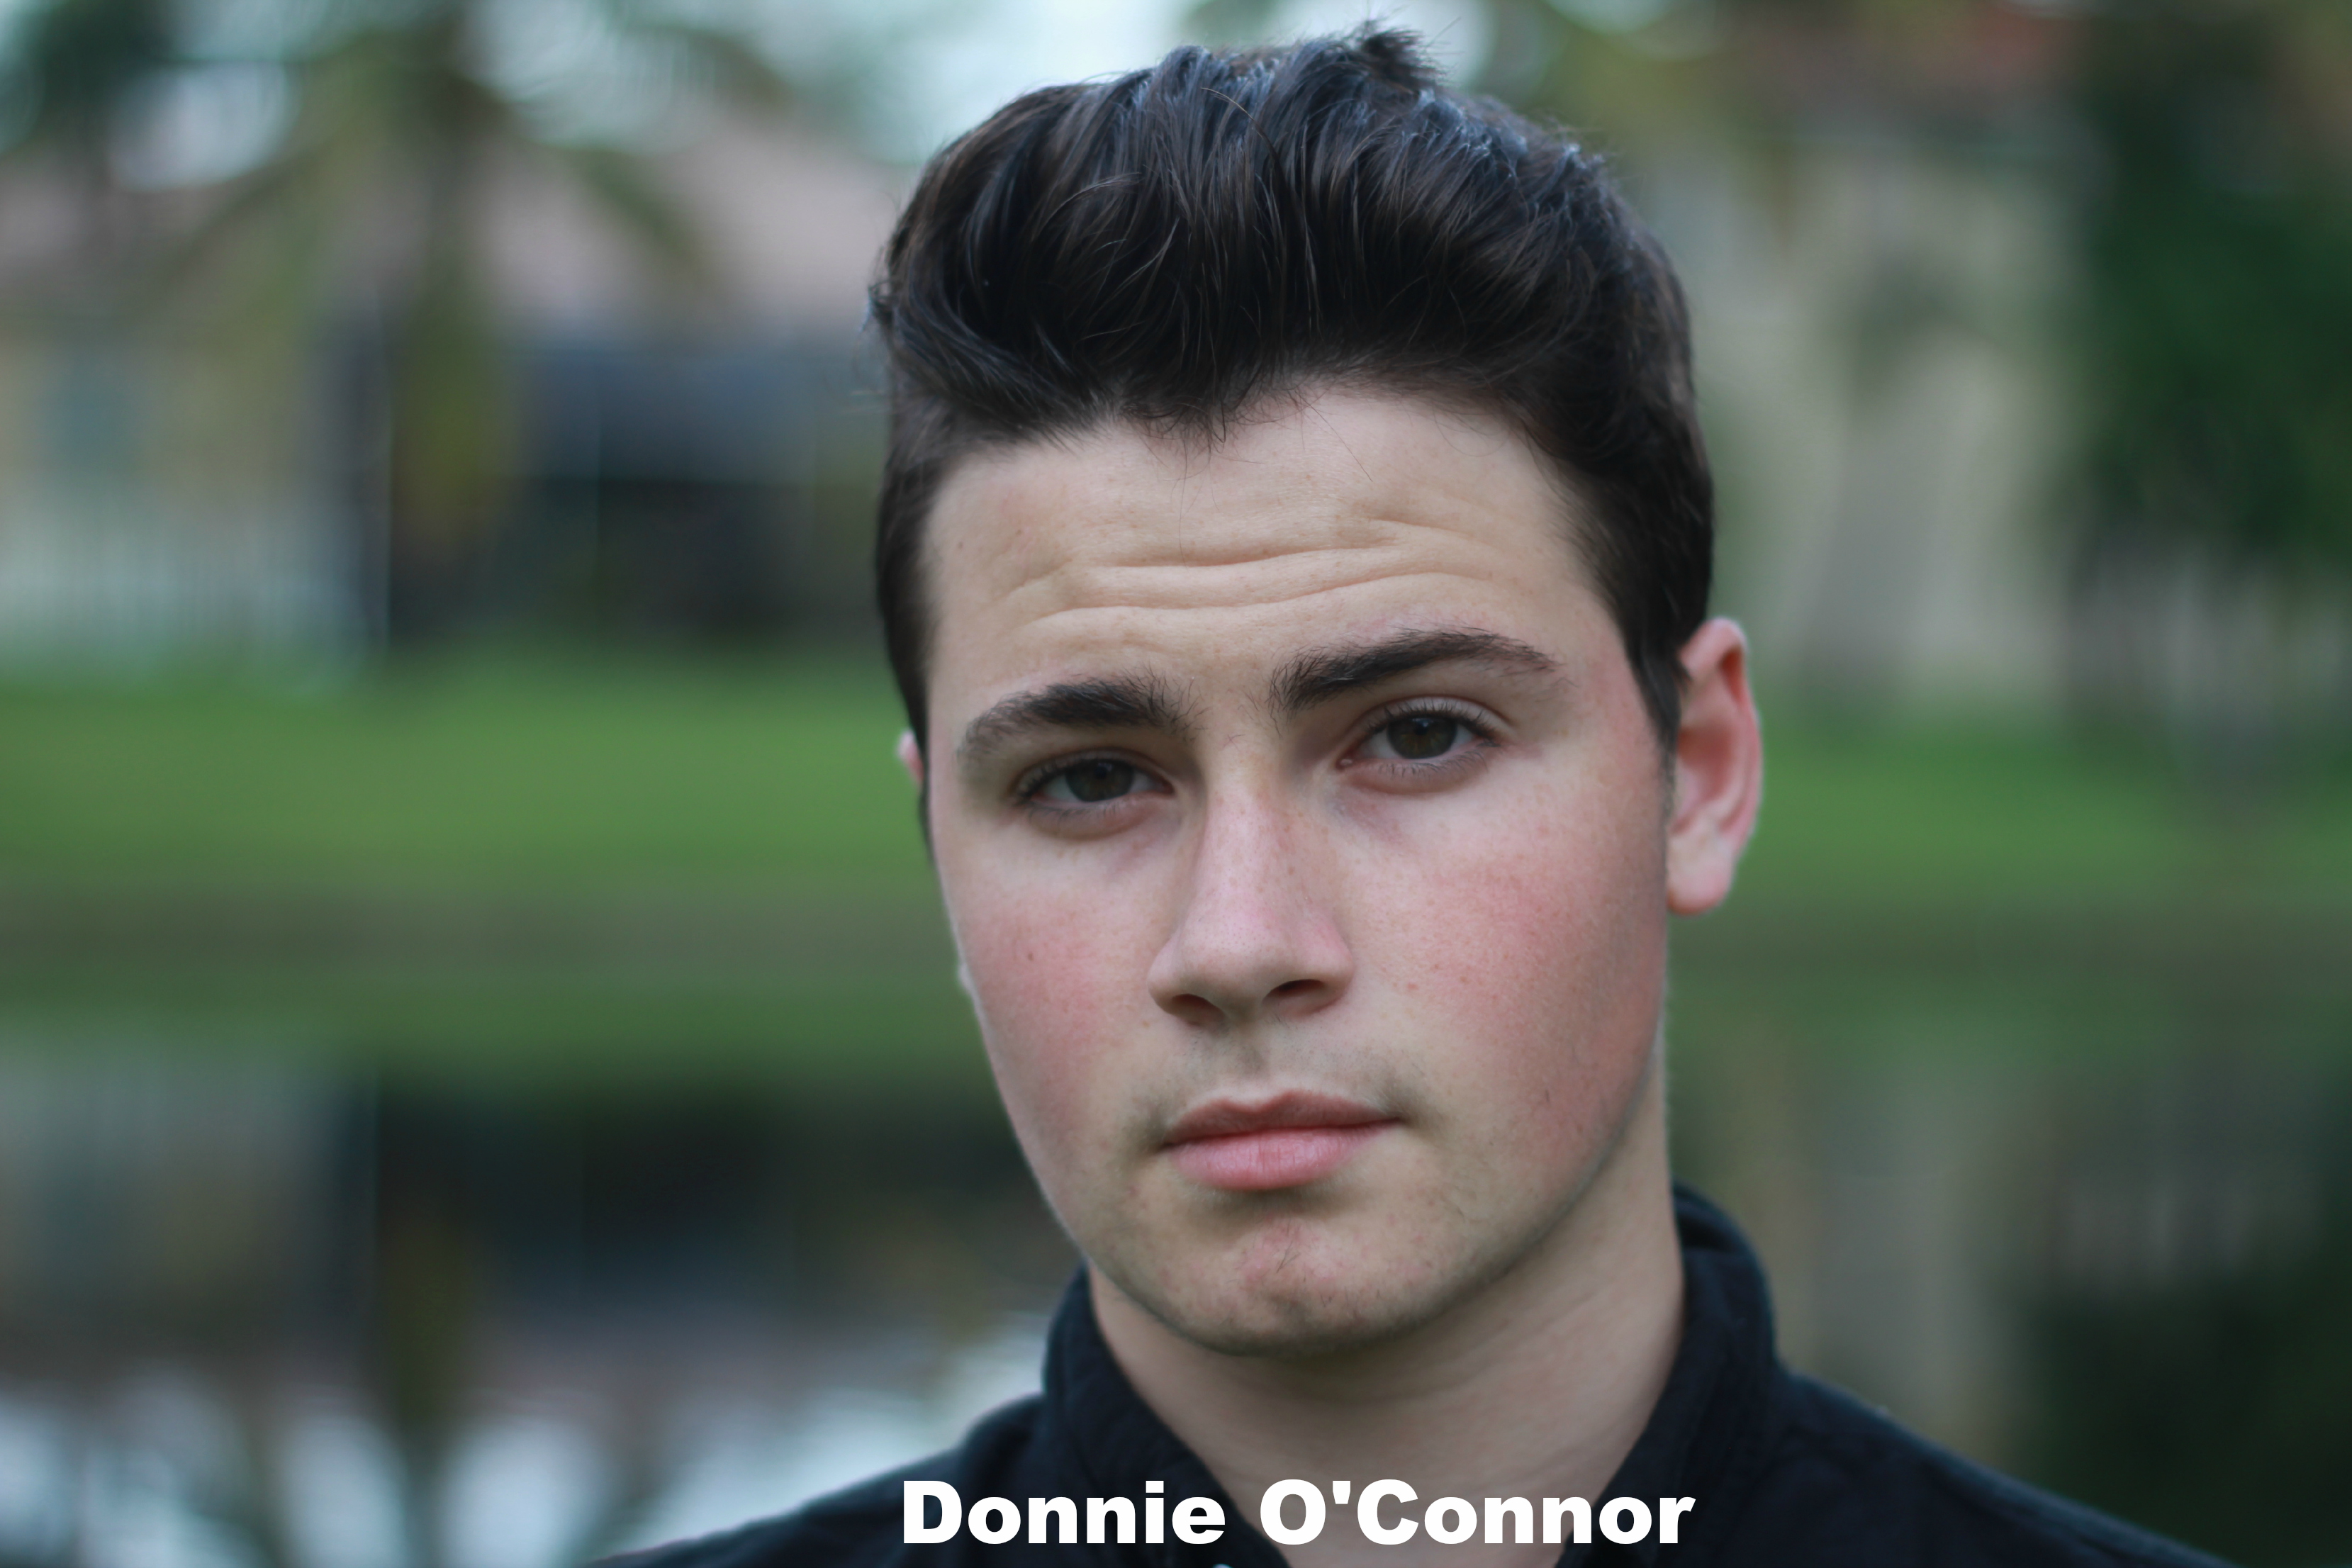 Donnie O'Connor